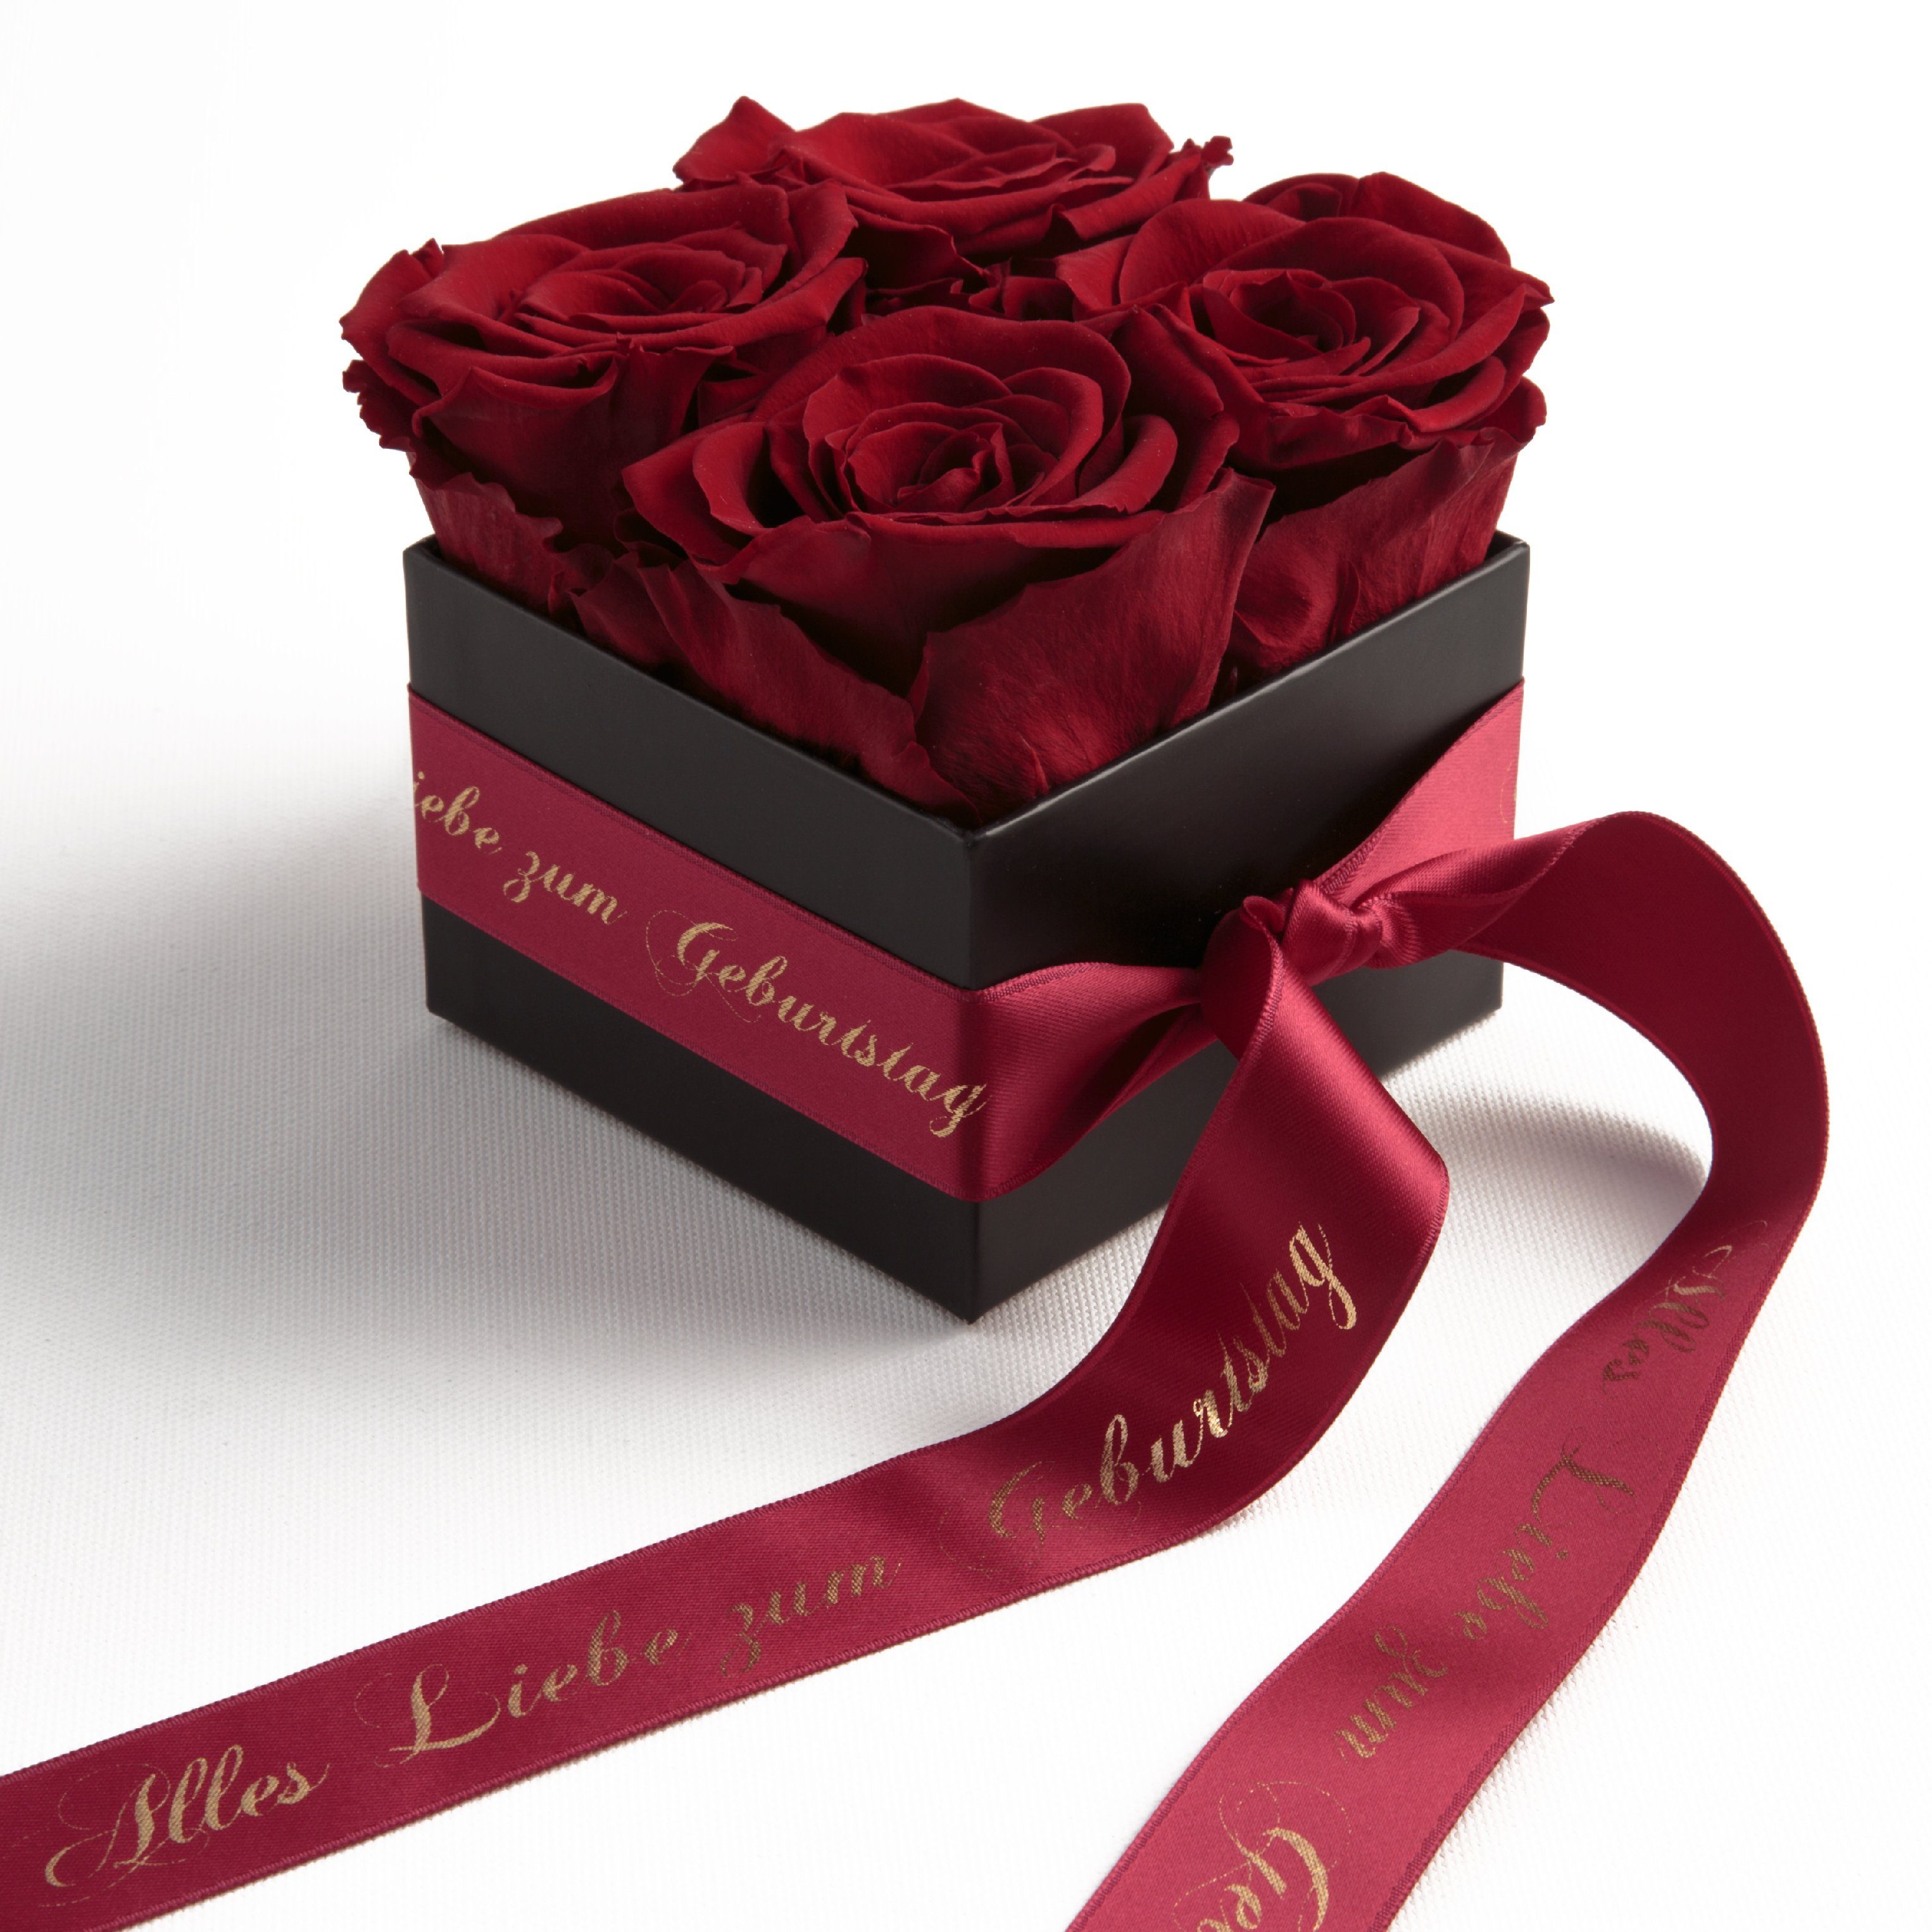 ROSEMARIE SCHULZ Heidelberg Dekoobjekt Rosenbox echte Rosen Alles Liebe zum Geburtstag Geschenk für Frauen (1 St), Echte konservierte Rosen Dunkelrot